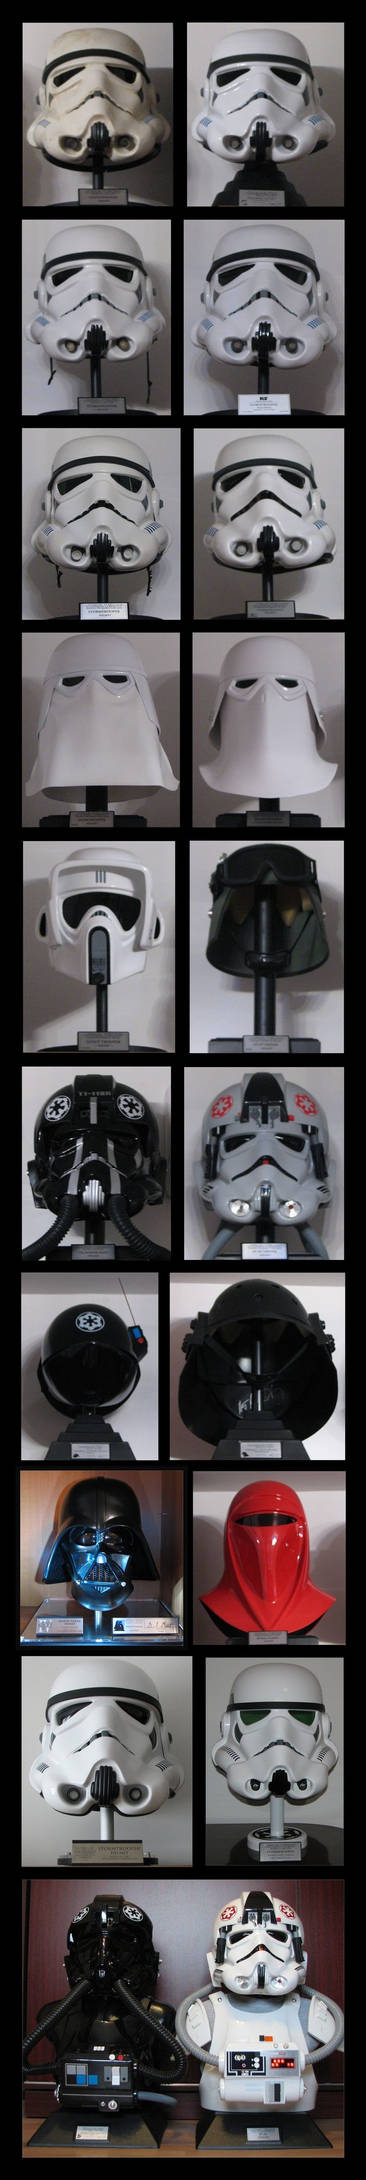 Star Wars Imperial helmets